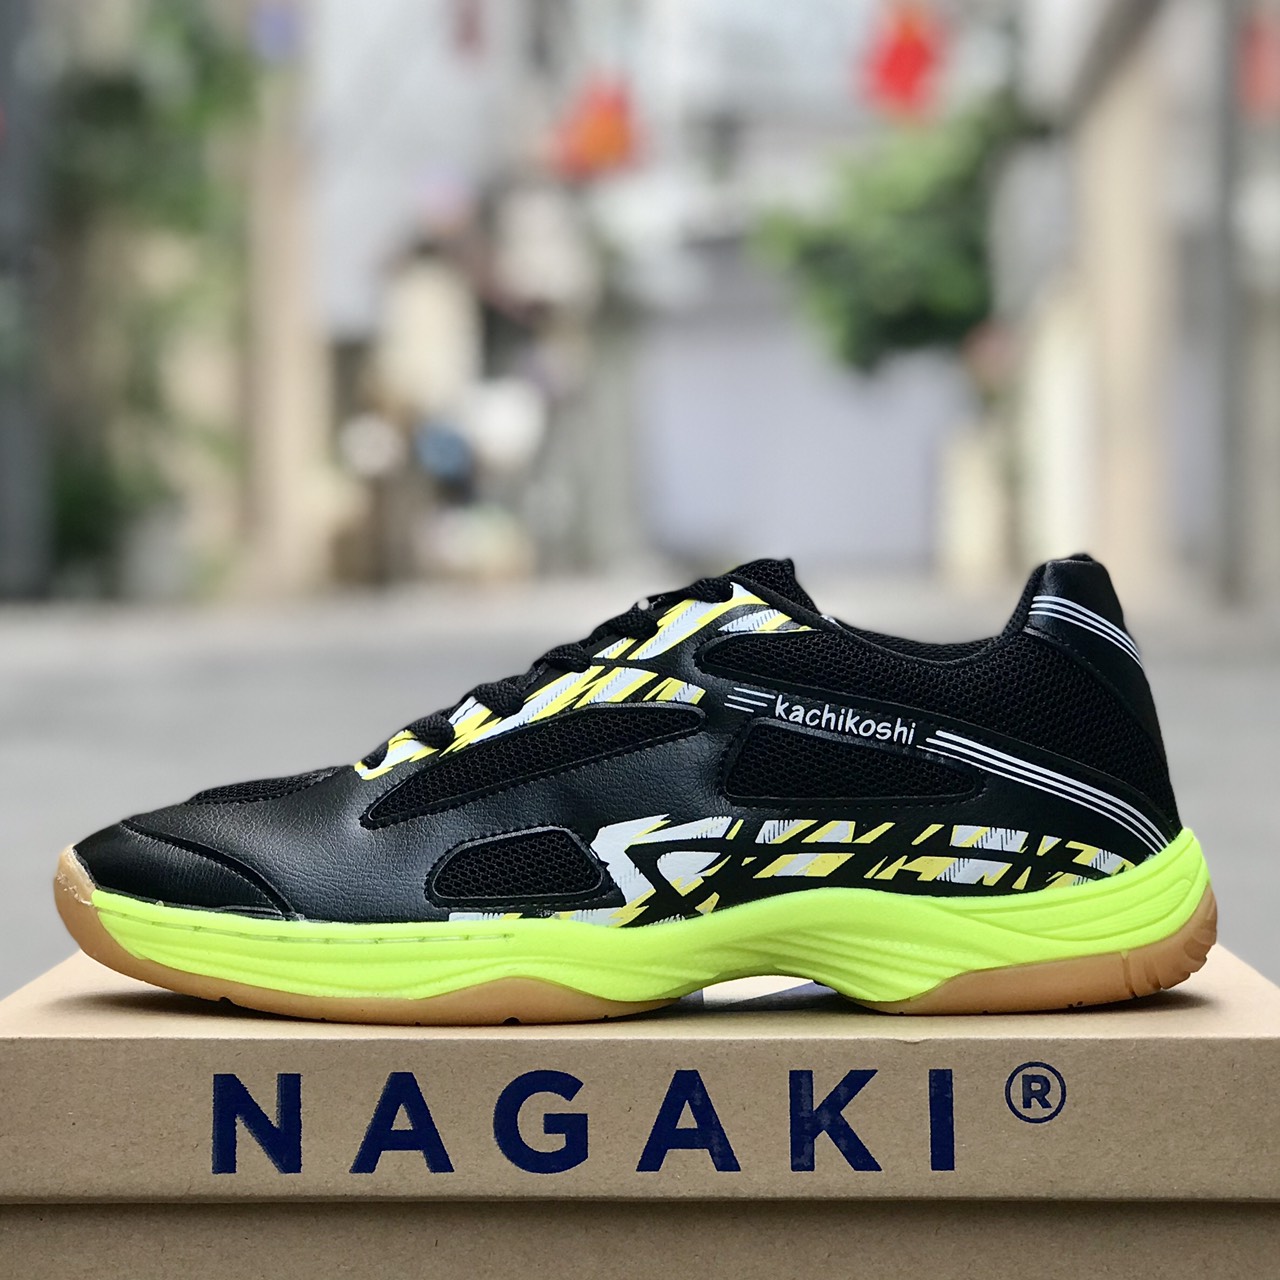 Giày cầu lông Nagaki chính hãng